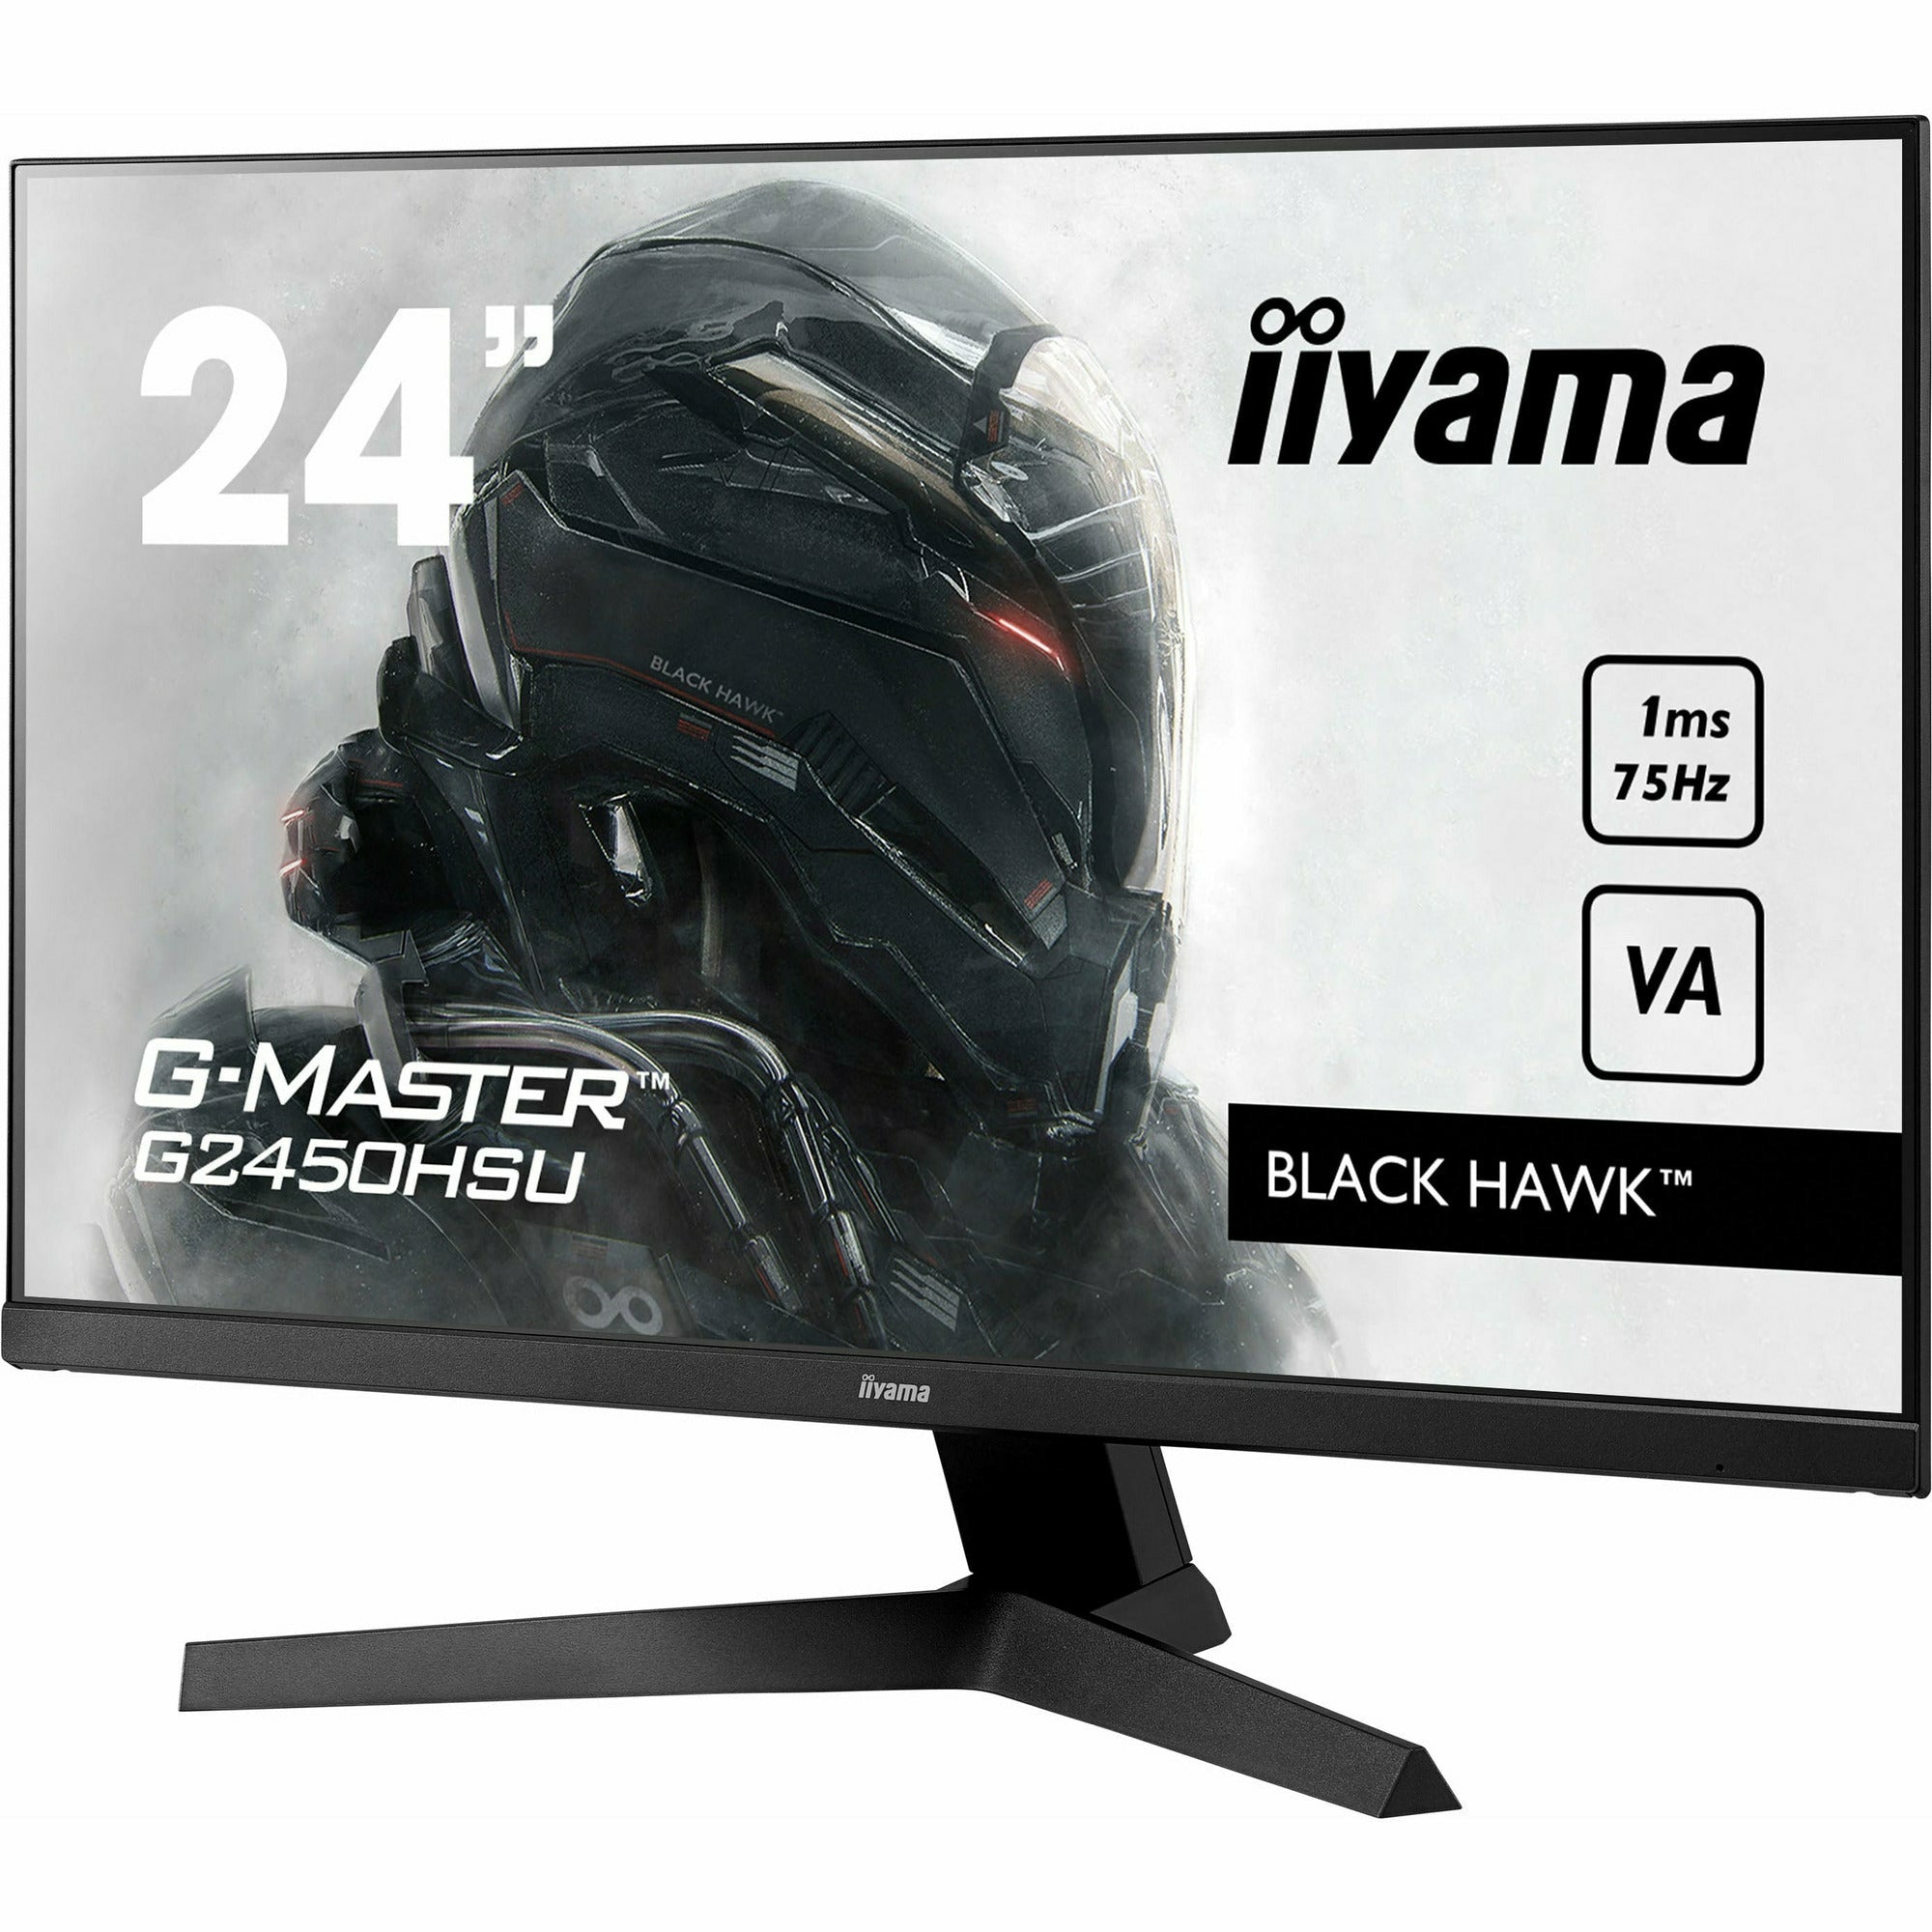 iiyama G-Master G2450HSU-B1 24" VA LCD Black Hawk Gaming Monitor